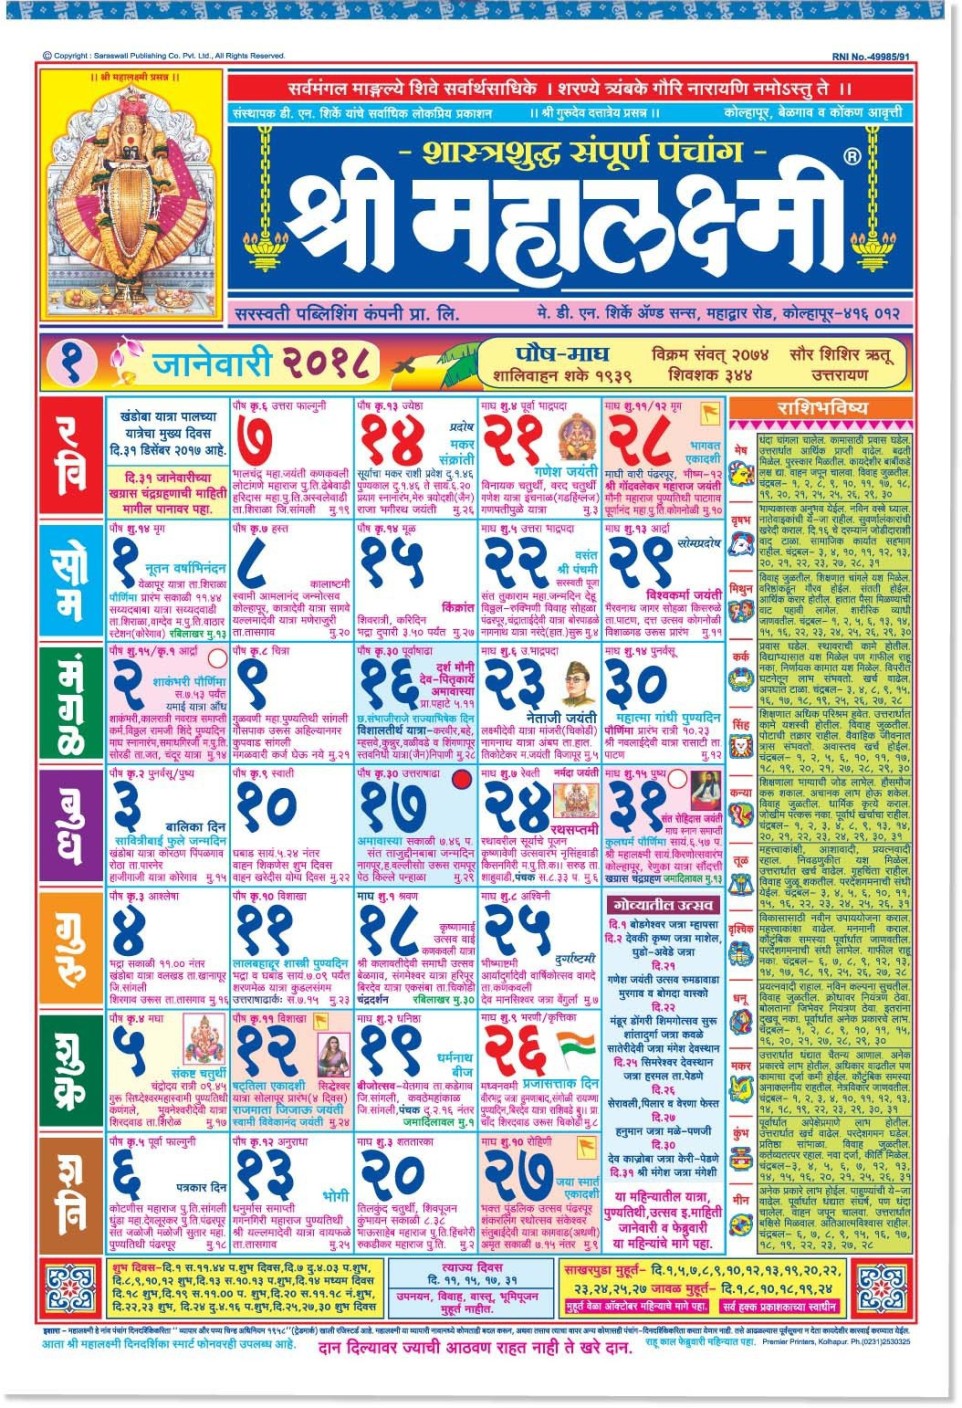 shri-mahalaxmi-marathi-regular-almanac-2018-wall-calendar-price-in